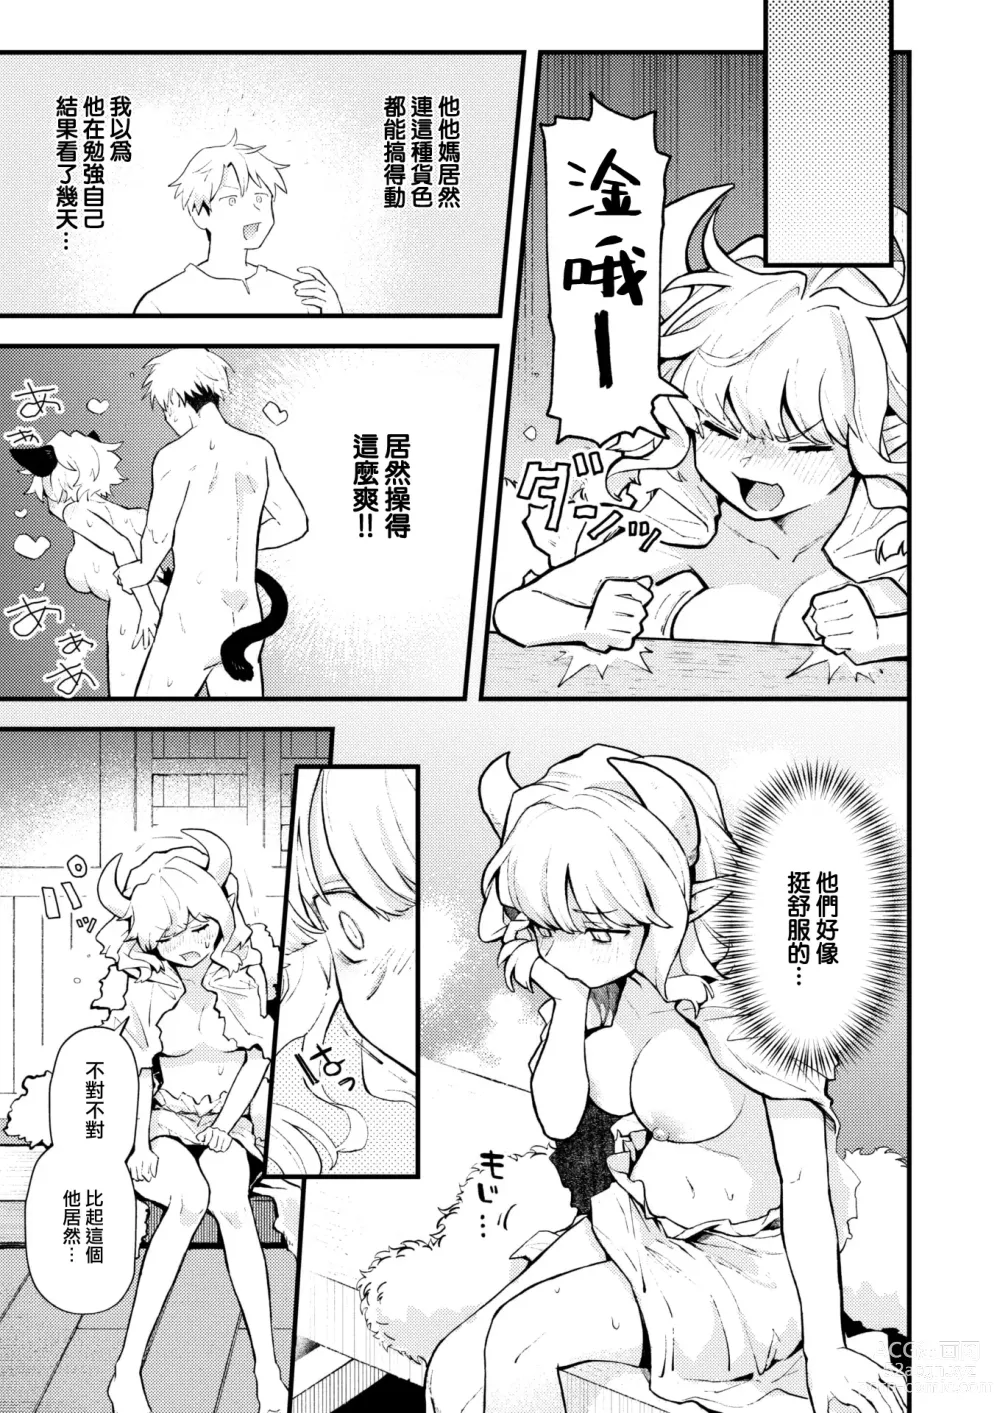 Page 4 of manga Shakkin Jigoku wa Owaranai